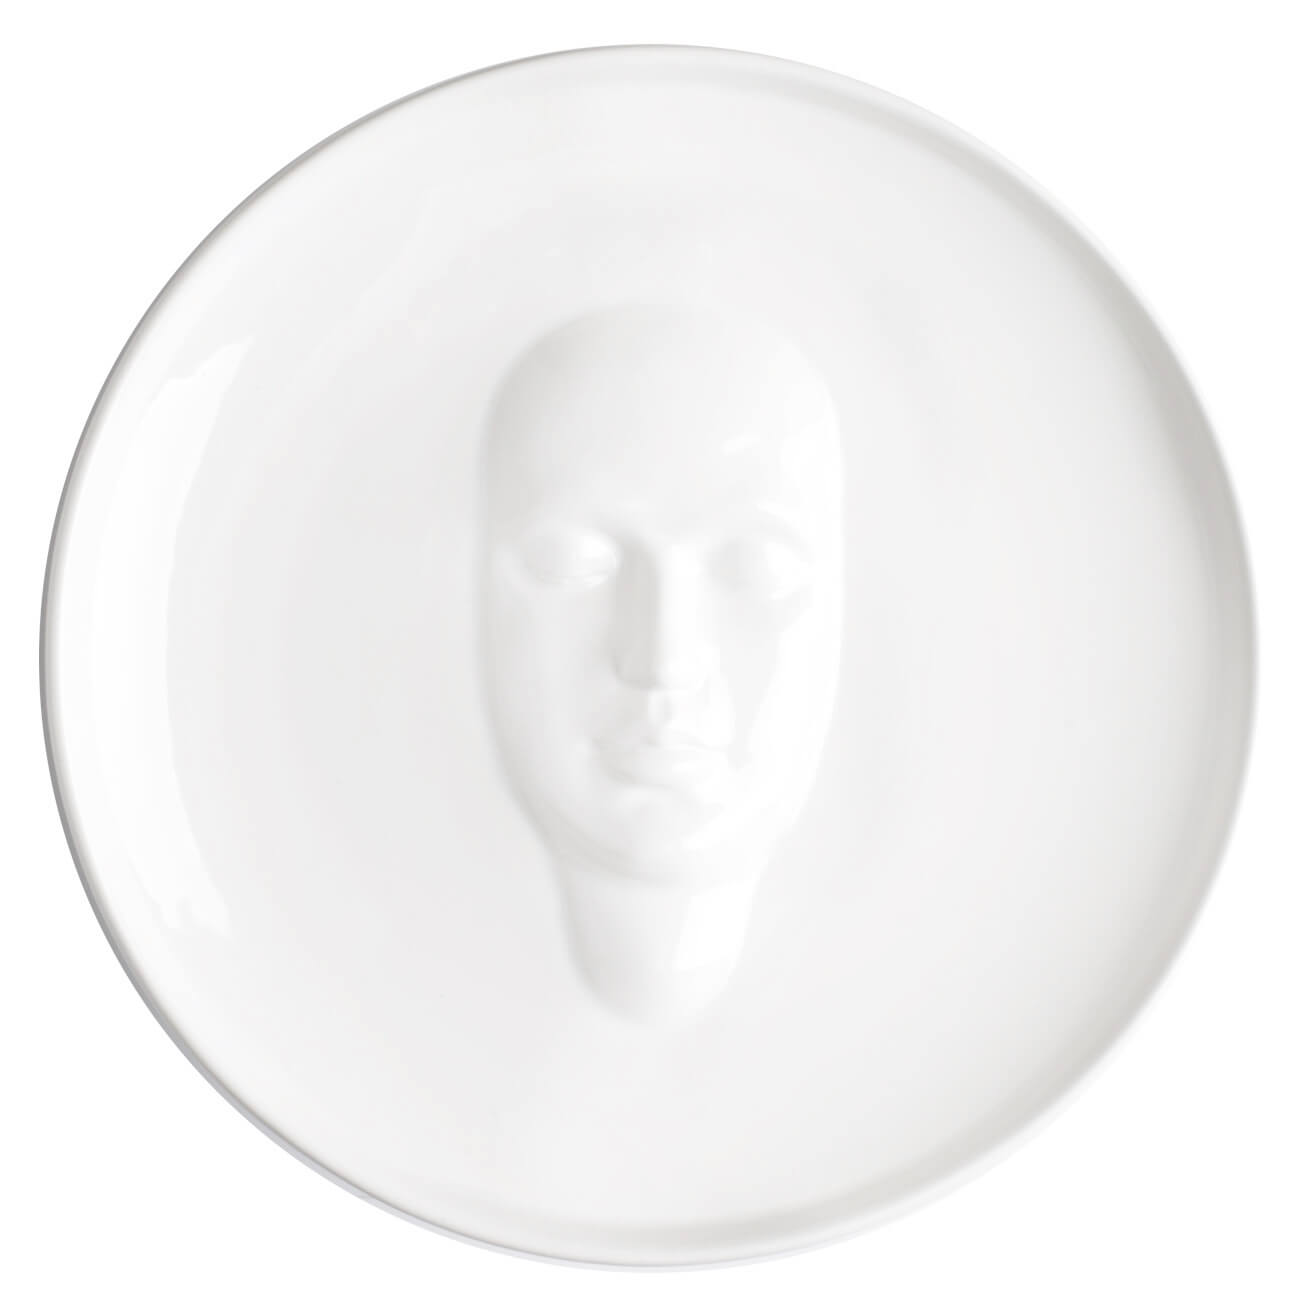 Блюдо, 24 см, керамика, белое, Лицо, Face блюдо глубокое 36 см керамика белое утки harmony